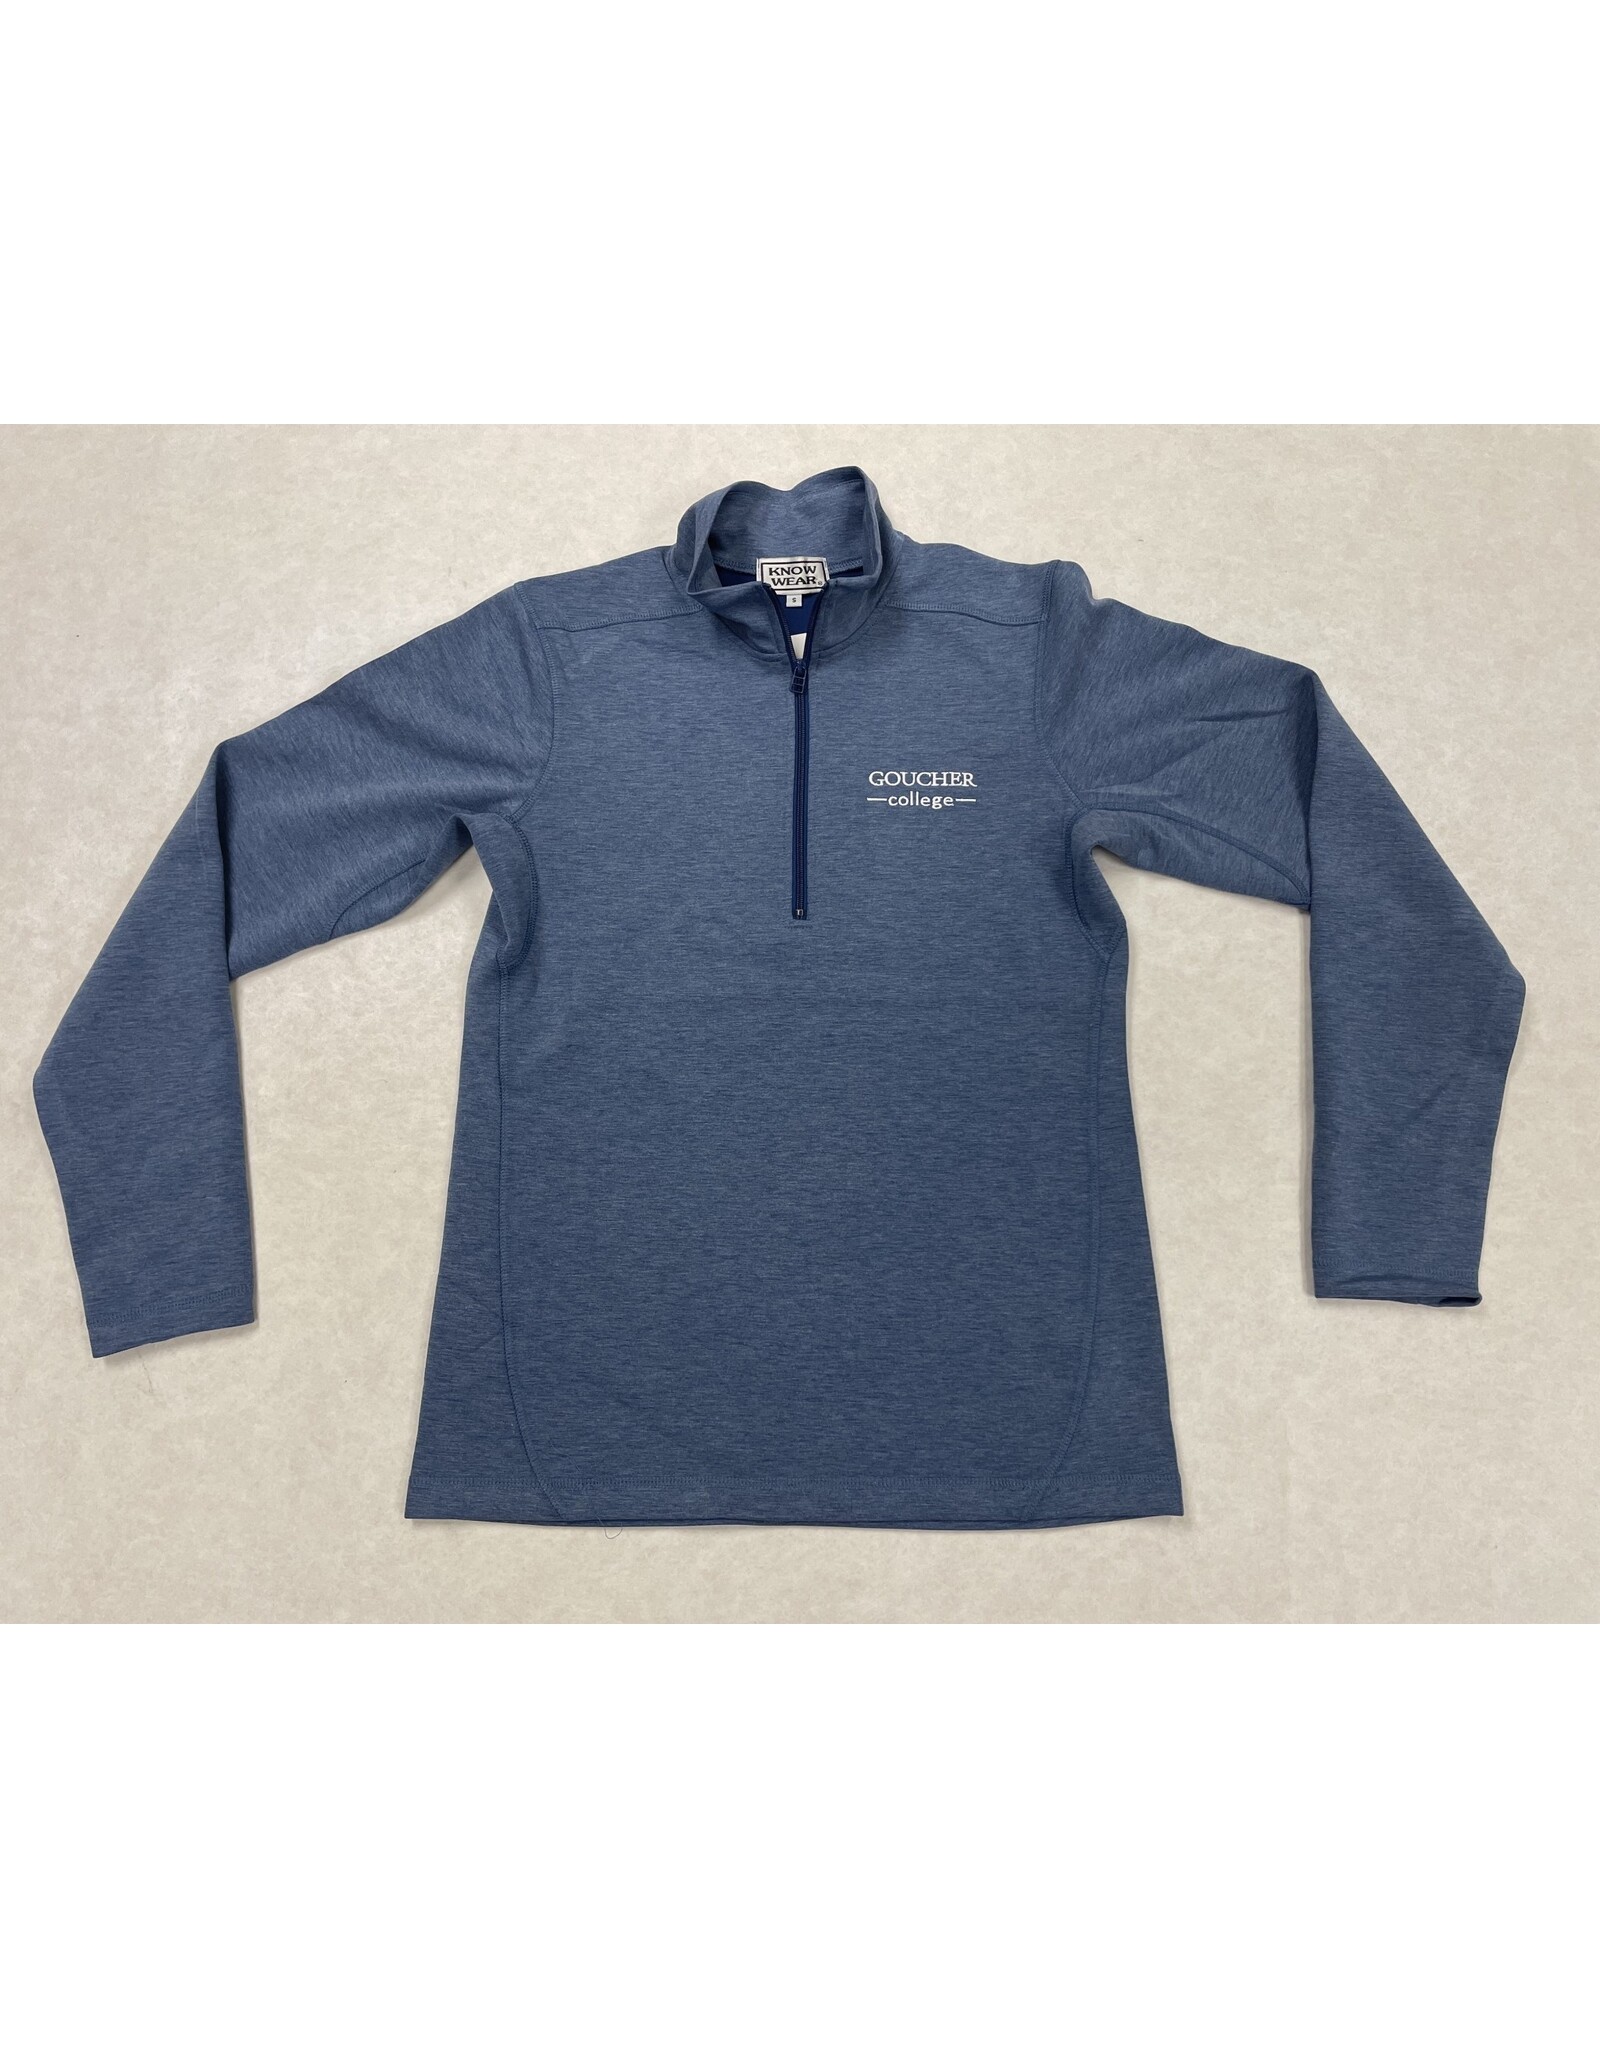 Know-Wear "Goucher College" 1/2 Zip Pullover Sweatshirt